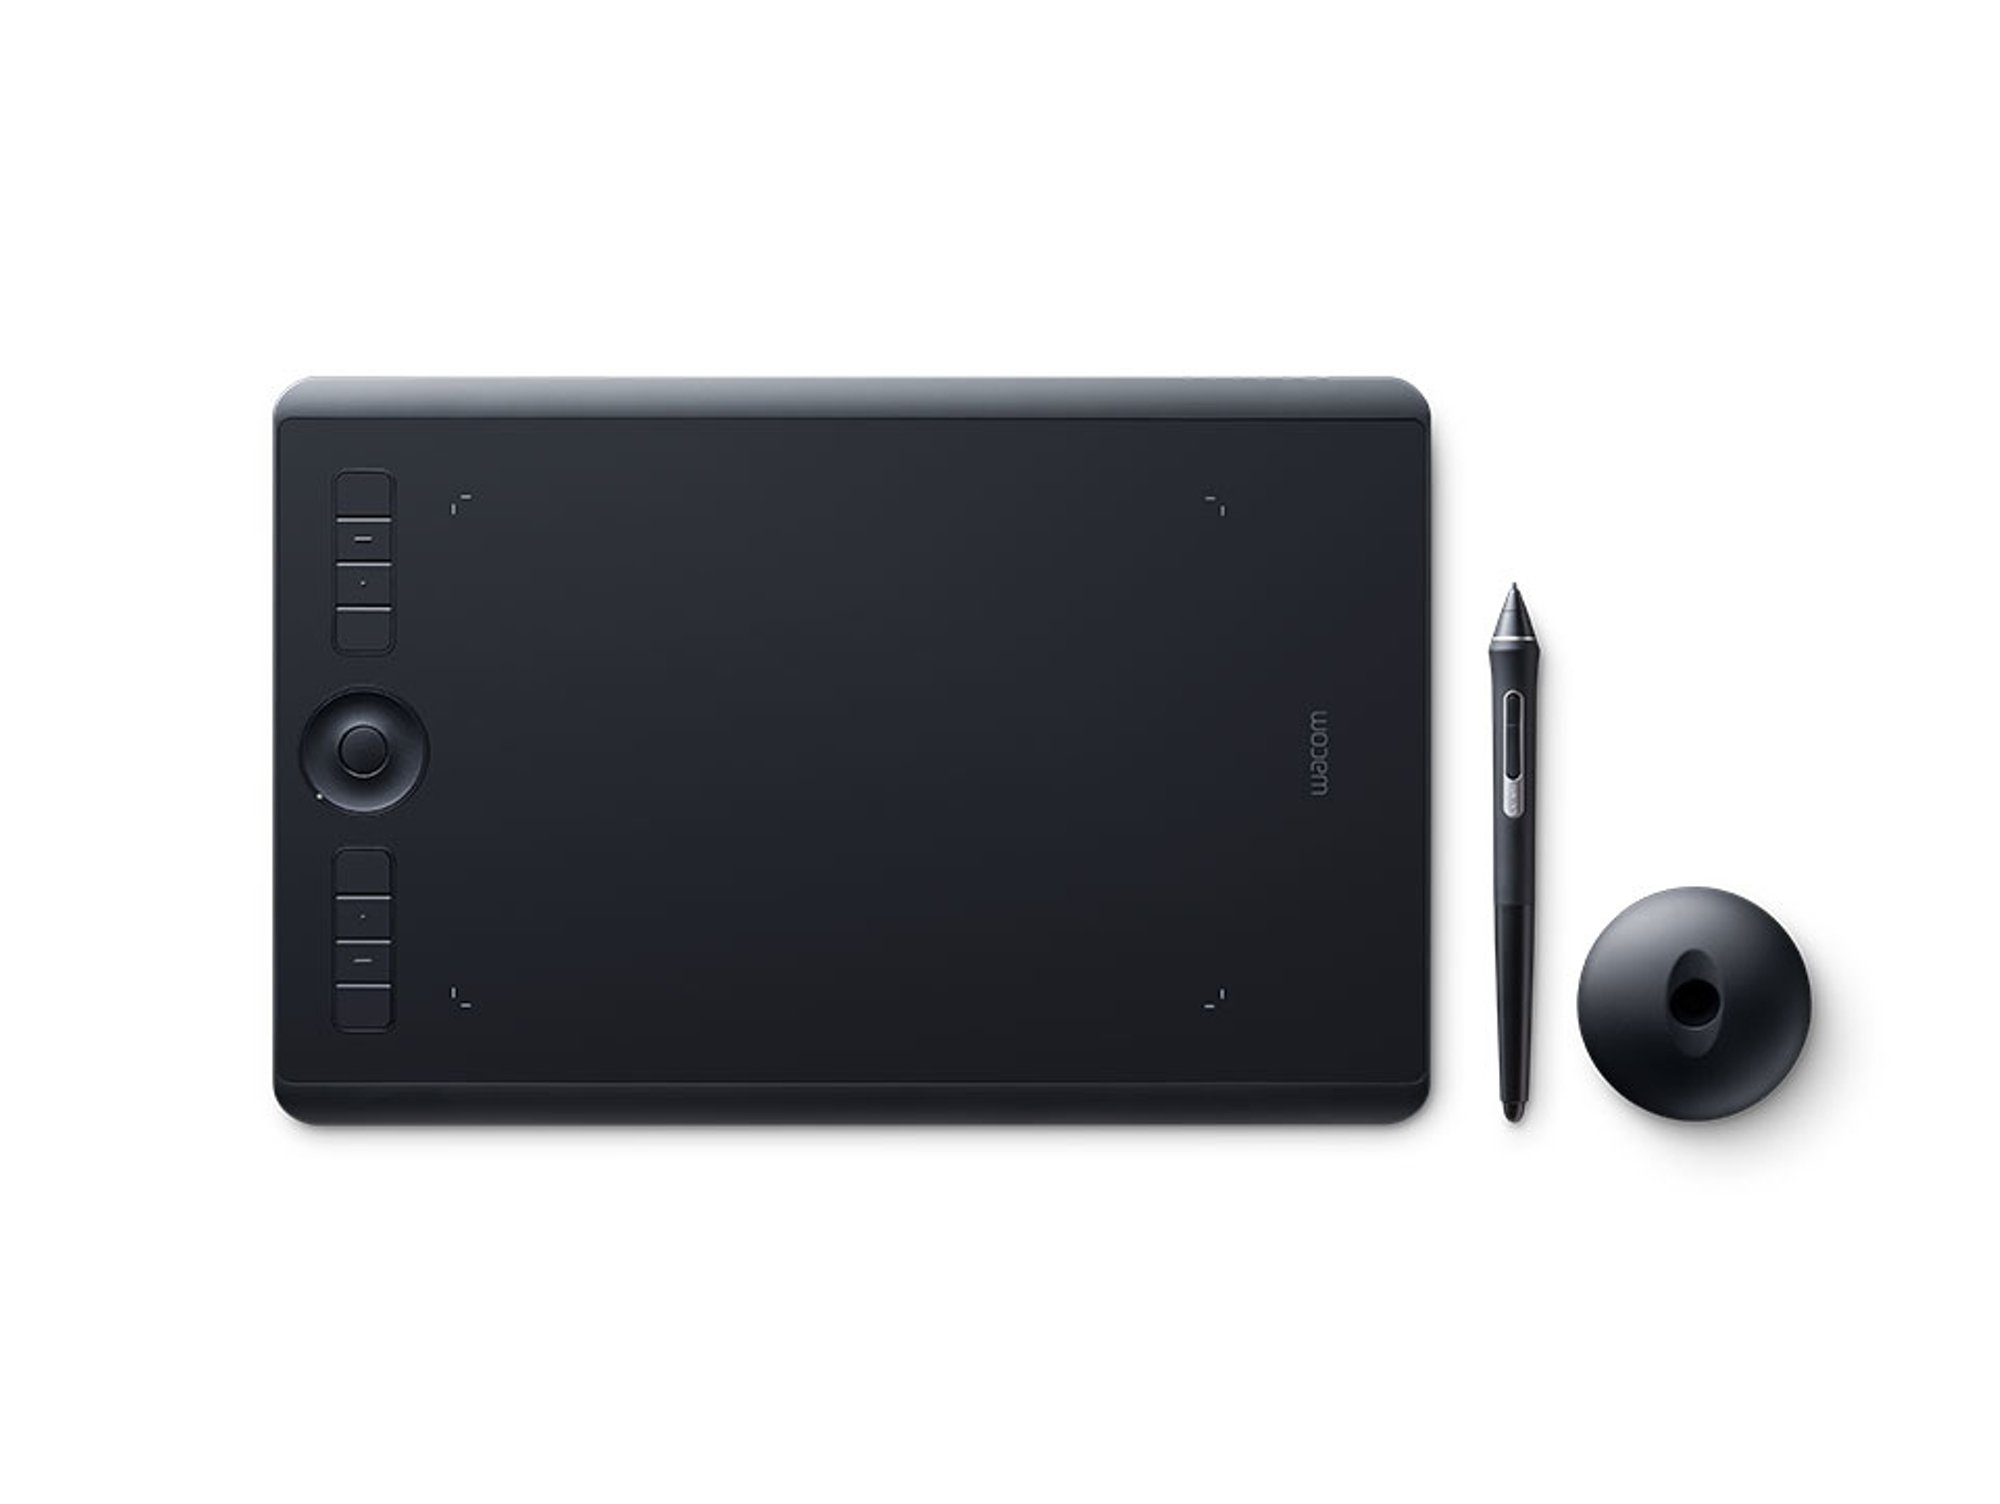 Wacom Intuos Pro tableta con pen 2 digitalizadora para pintura y diseño 10 puntas compatible windows macos negro usb bluetooth os 224 x 148 mm mediana south medium 5080líneas 22 148mm